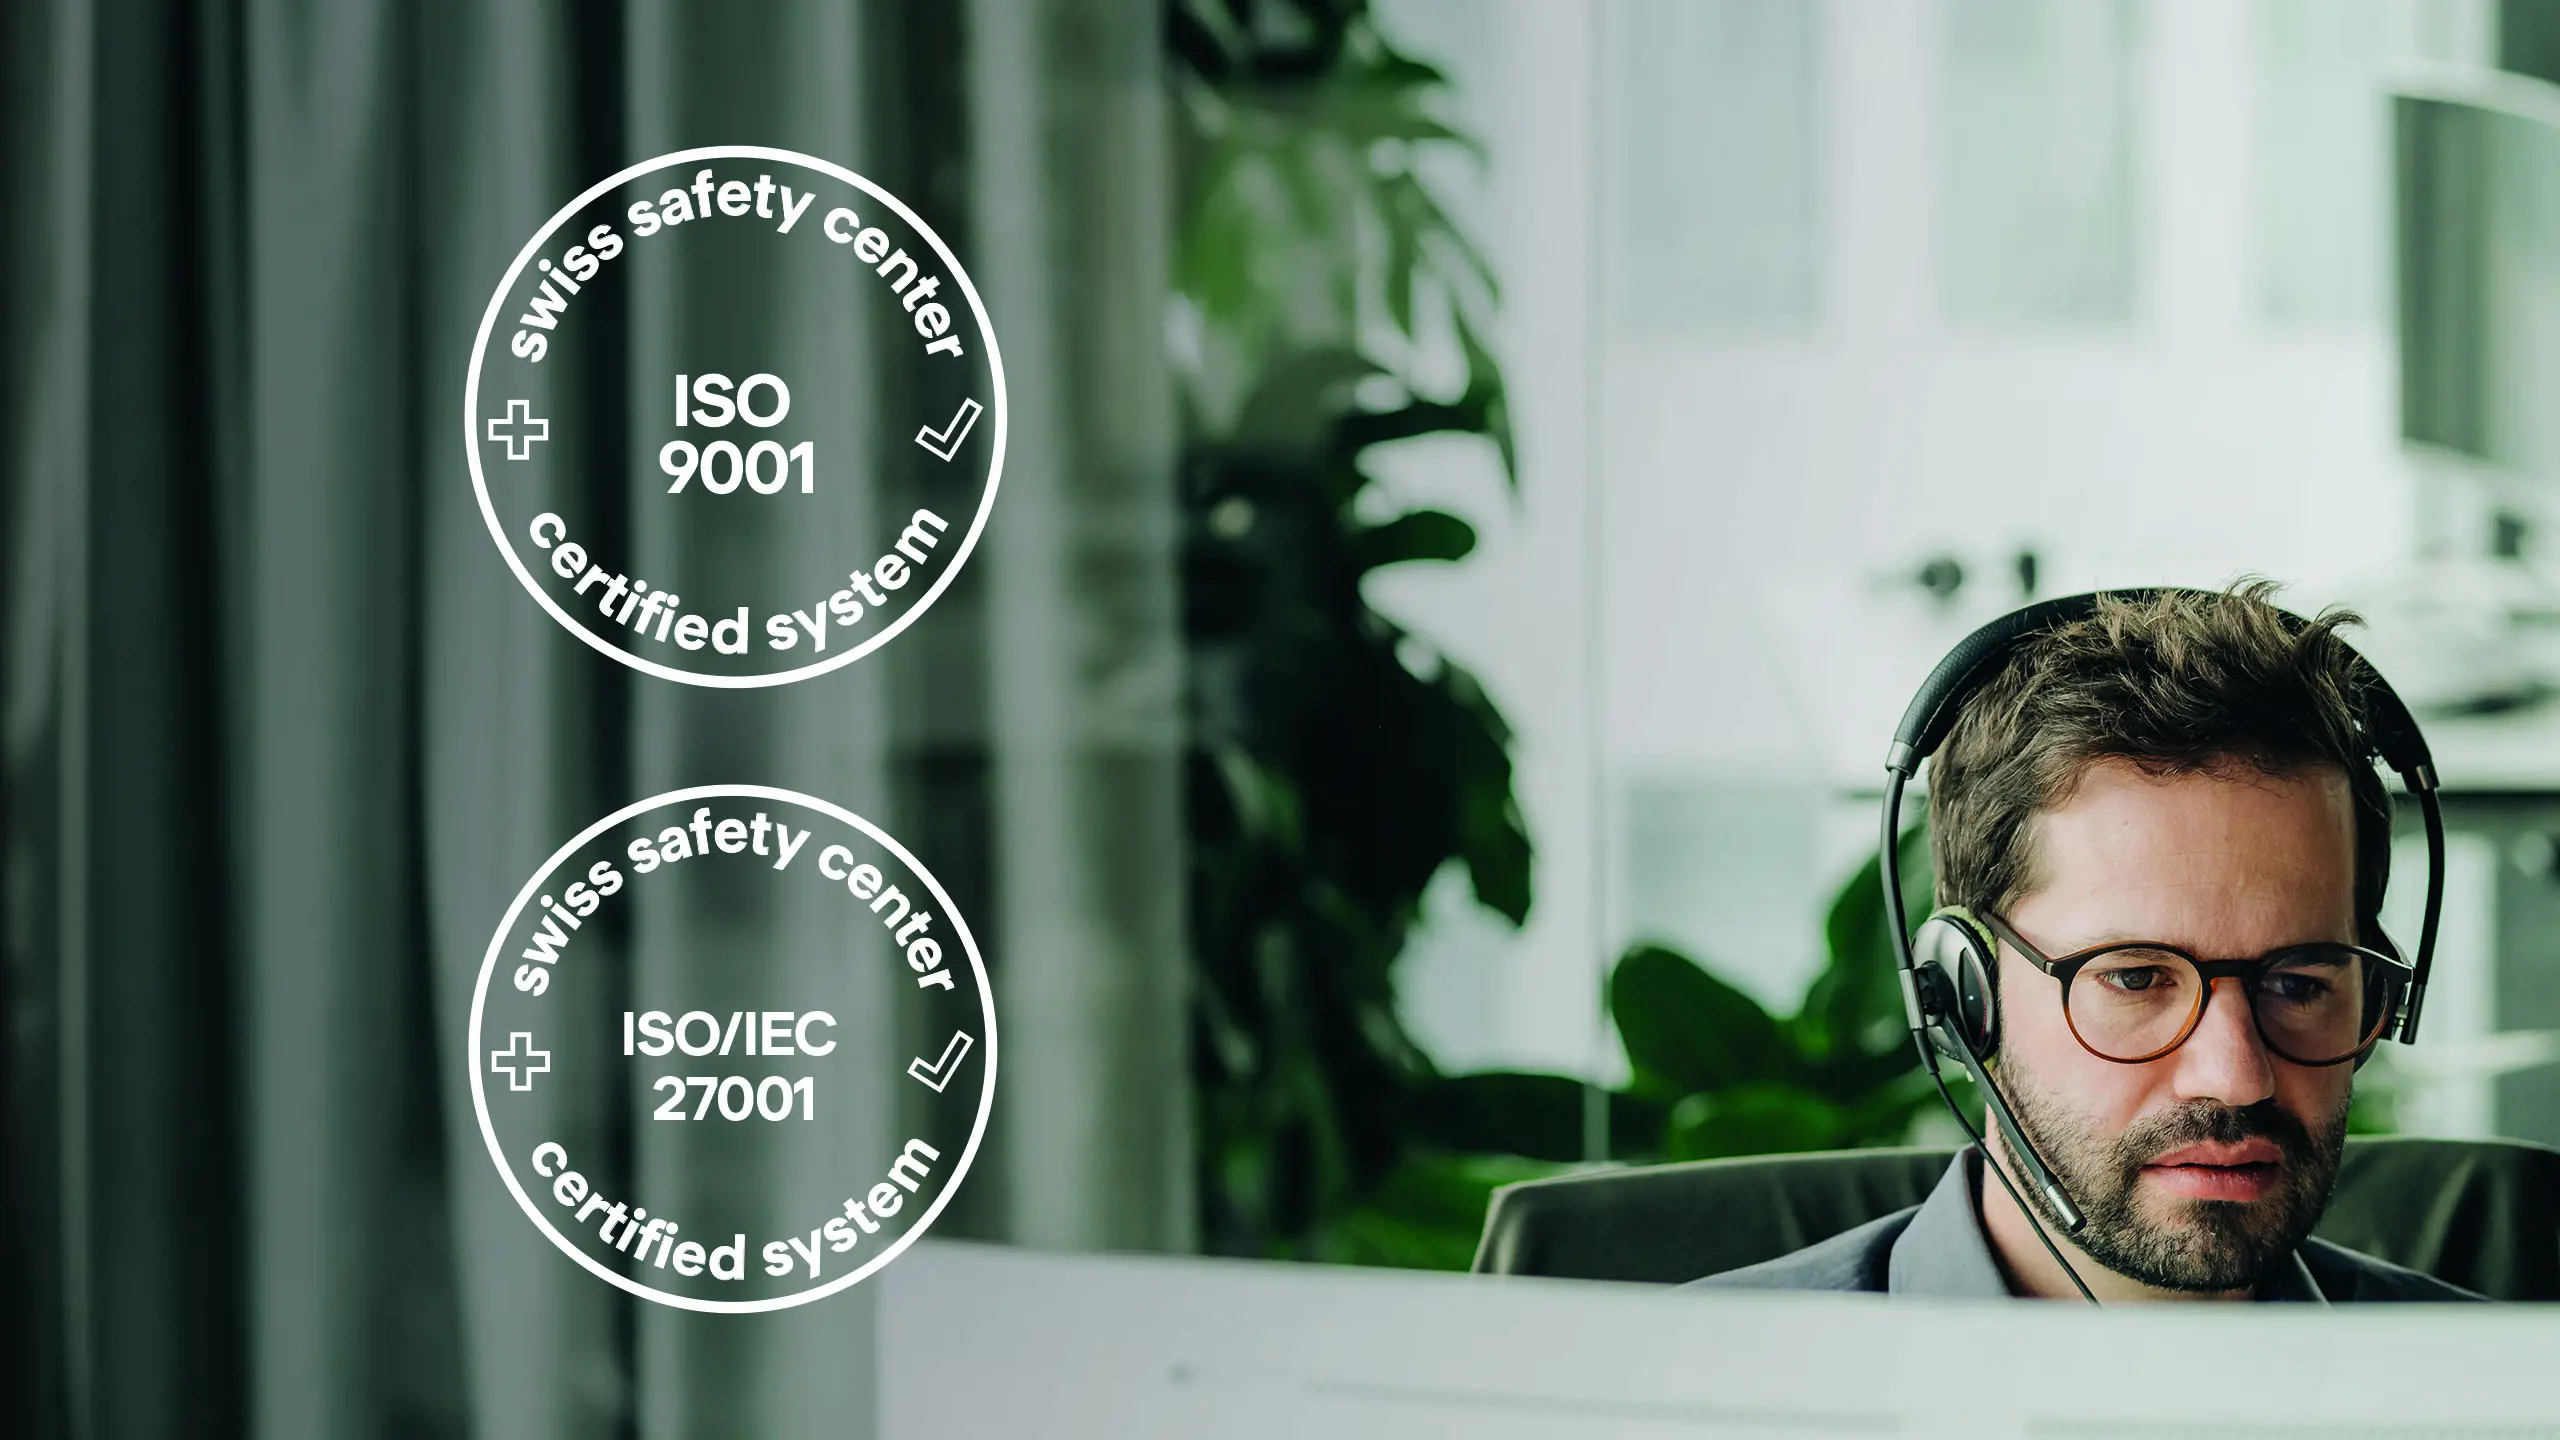 Mann im Bild und rechts davon die Icons der ISO Zertifizierung 27001 und 9001